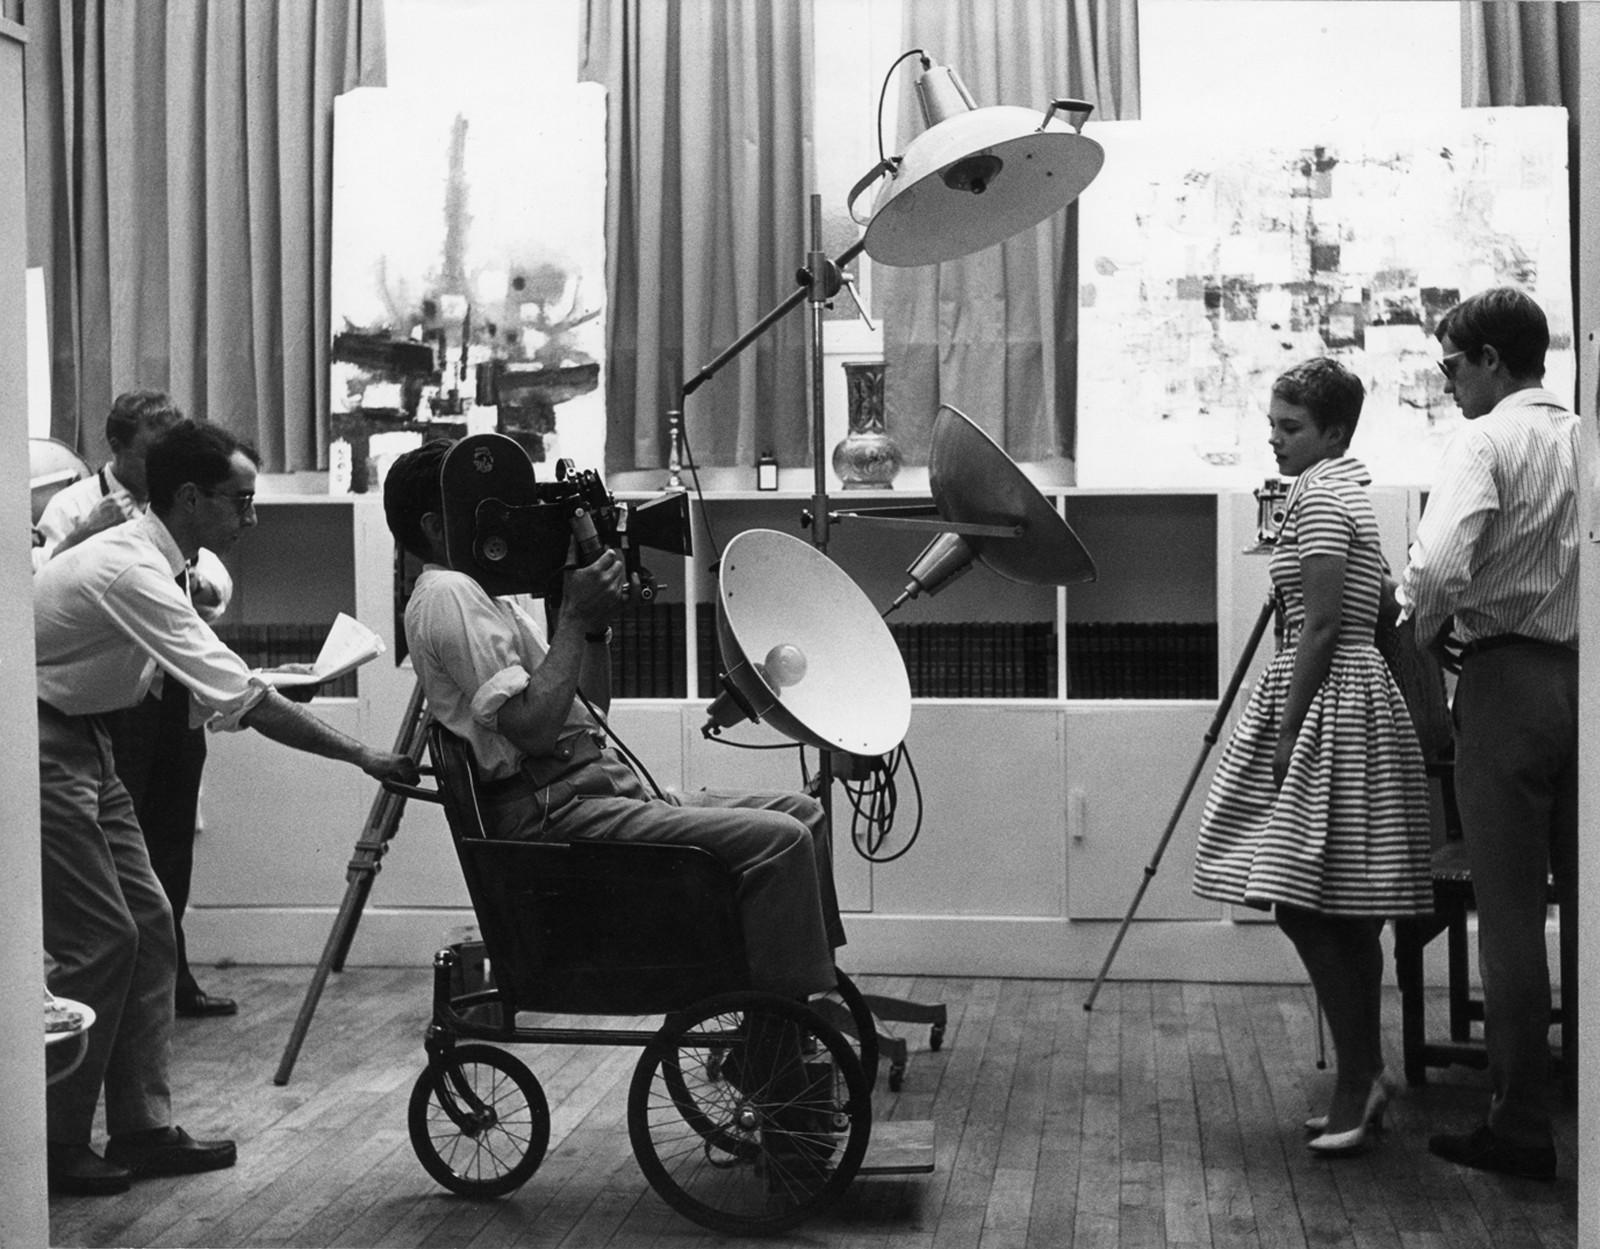 À bout de souffle (Jean-Luc Godard, 1959). Vendredi 11 septembre 1959, 13 heures, Studio rue Campagne Première, Paris.